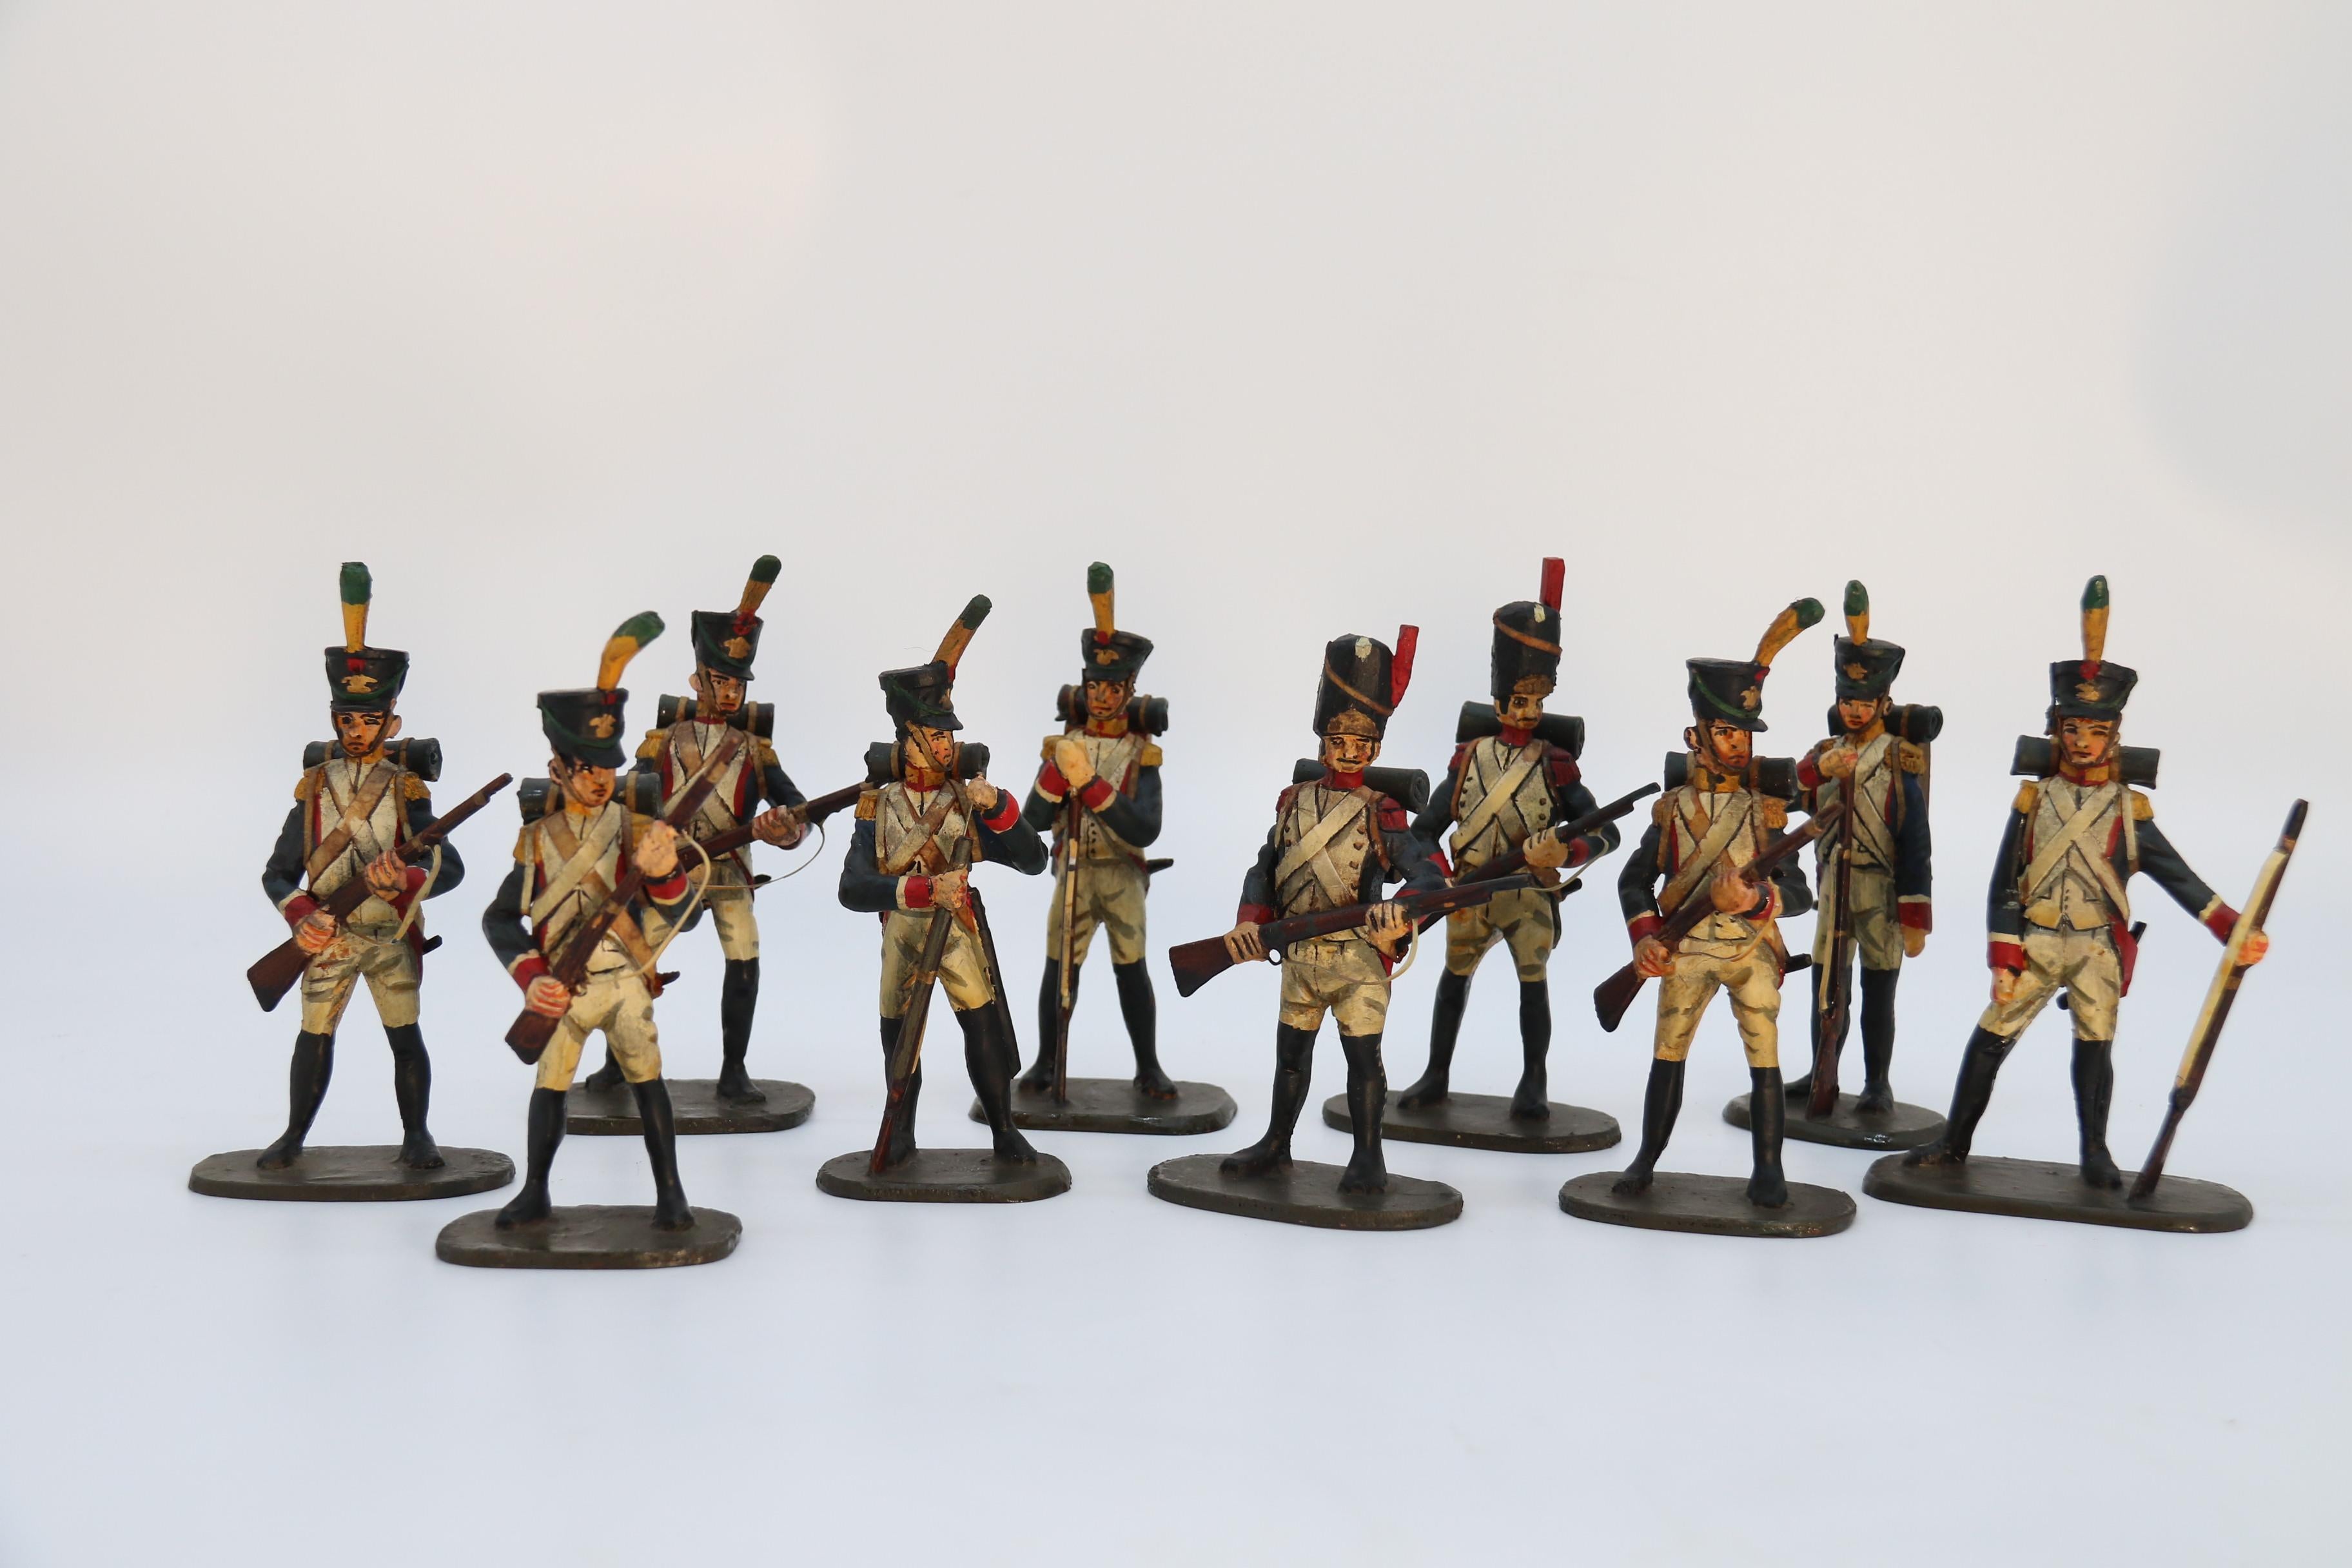 Ce groupe très rare de soldats français de la période napoléonienne est entièrement fabriqué à la main. Ils ont tous été finement sculptés dans le bois, puis peints à la main dans les moindres détails. Chaque soldat est représenté dans une position